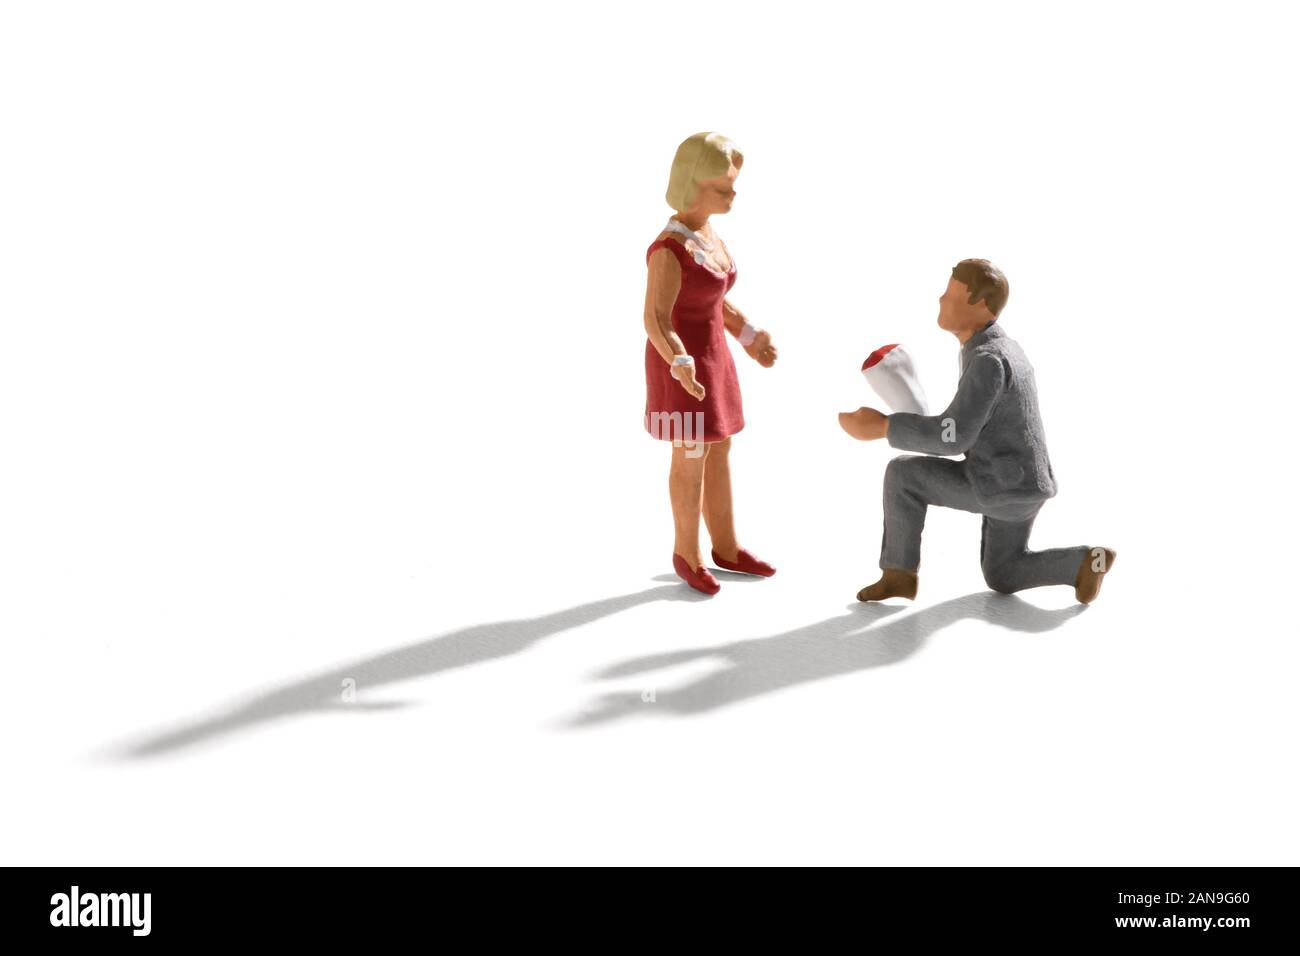 Scène Miniature de proposition d'engagement, avec un petit homme en costume gris, le bas sur son genou avec un bouquet de fleurs, qui se propose d'une femme en robe rouge. Banque D'Images